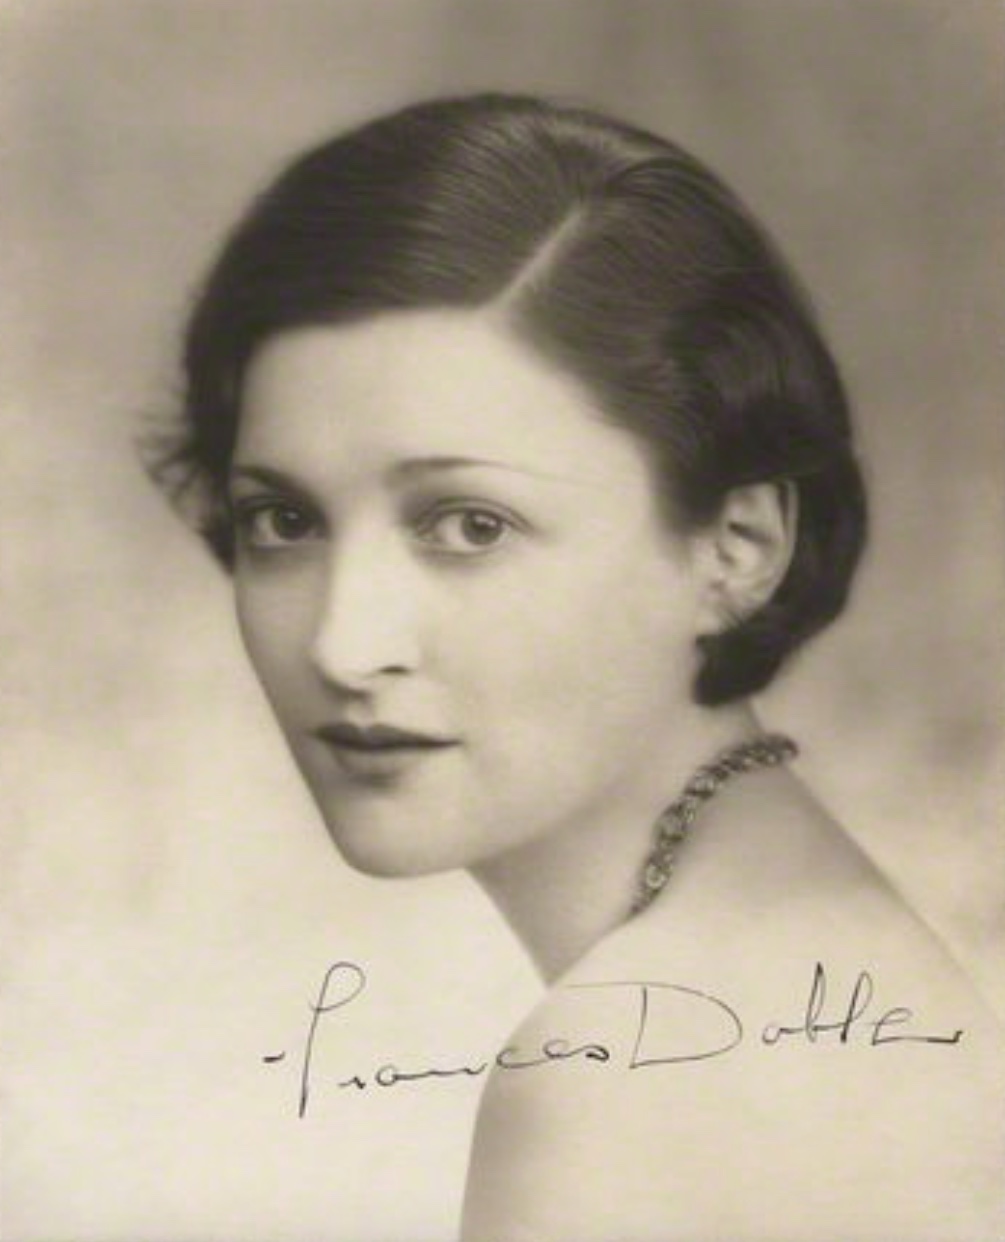 Frances Doble